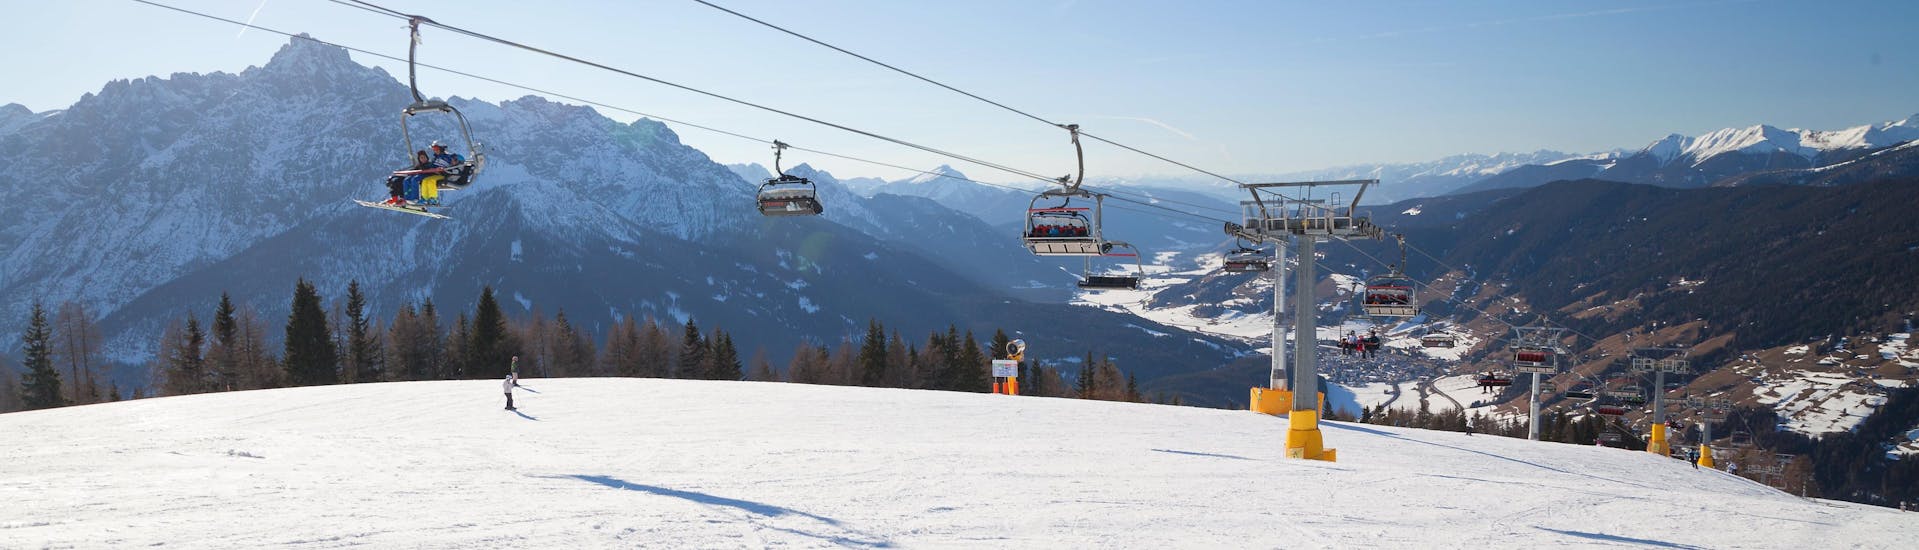 Remonte en las pistas de San Vito di Cadore donde se pueden recibir clases de esquí.